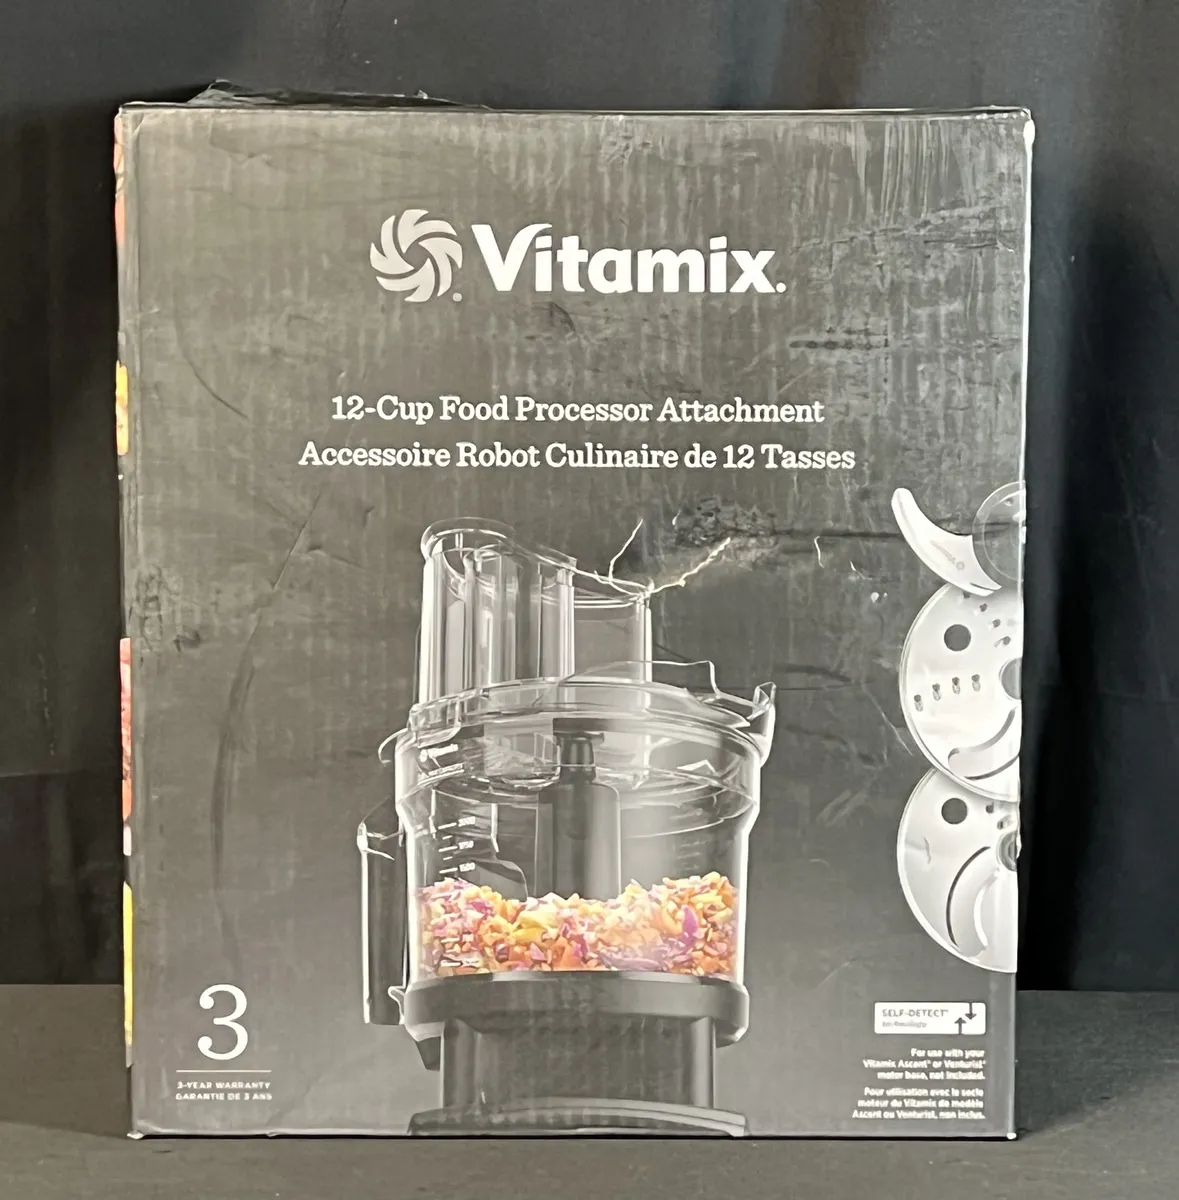 Vitamix 12-Cup Food Processor Attachment